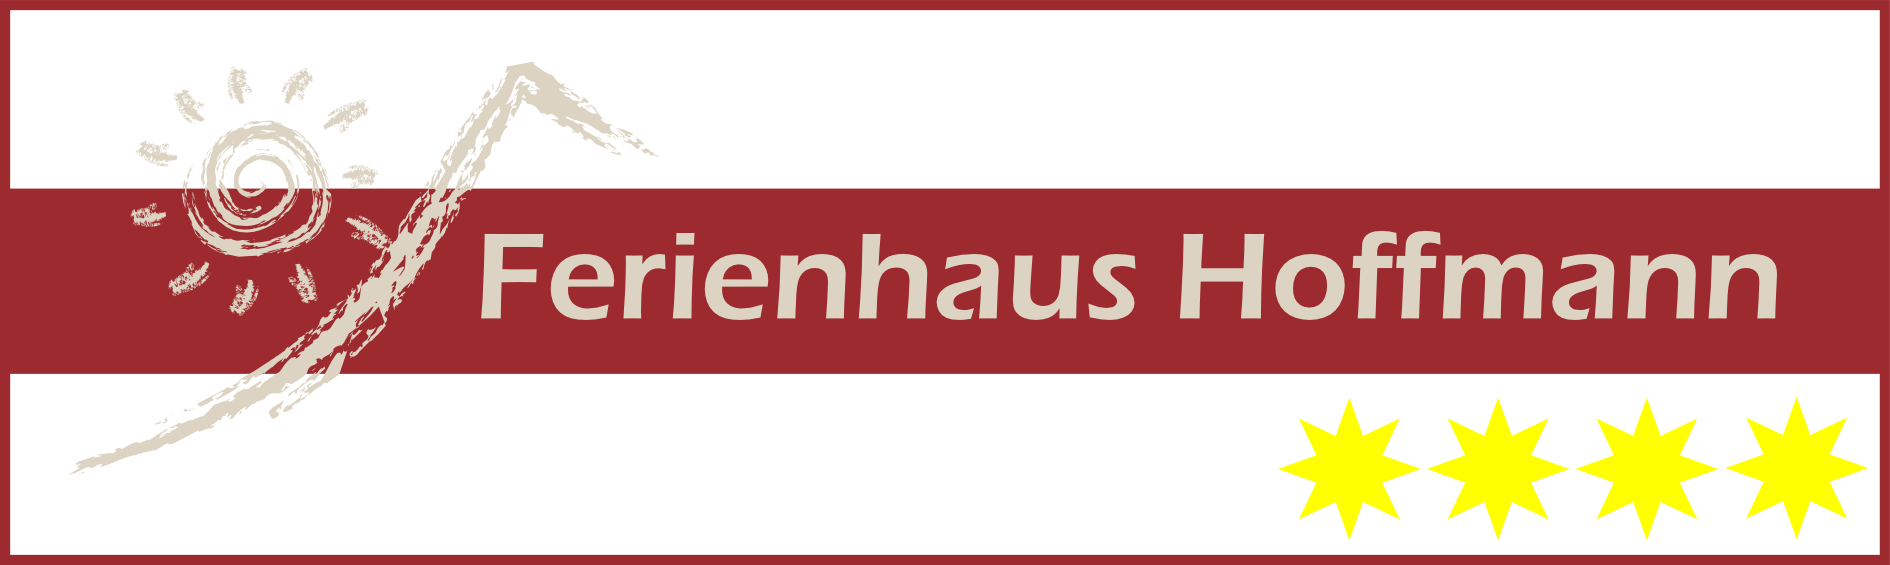 Ferienhaus Hoffmann